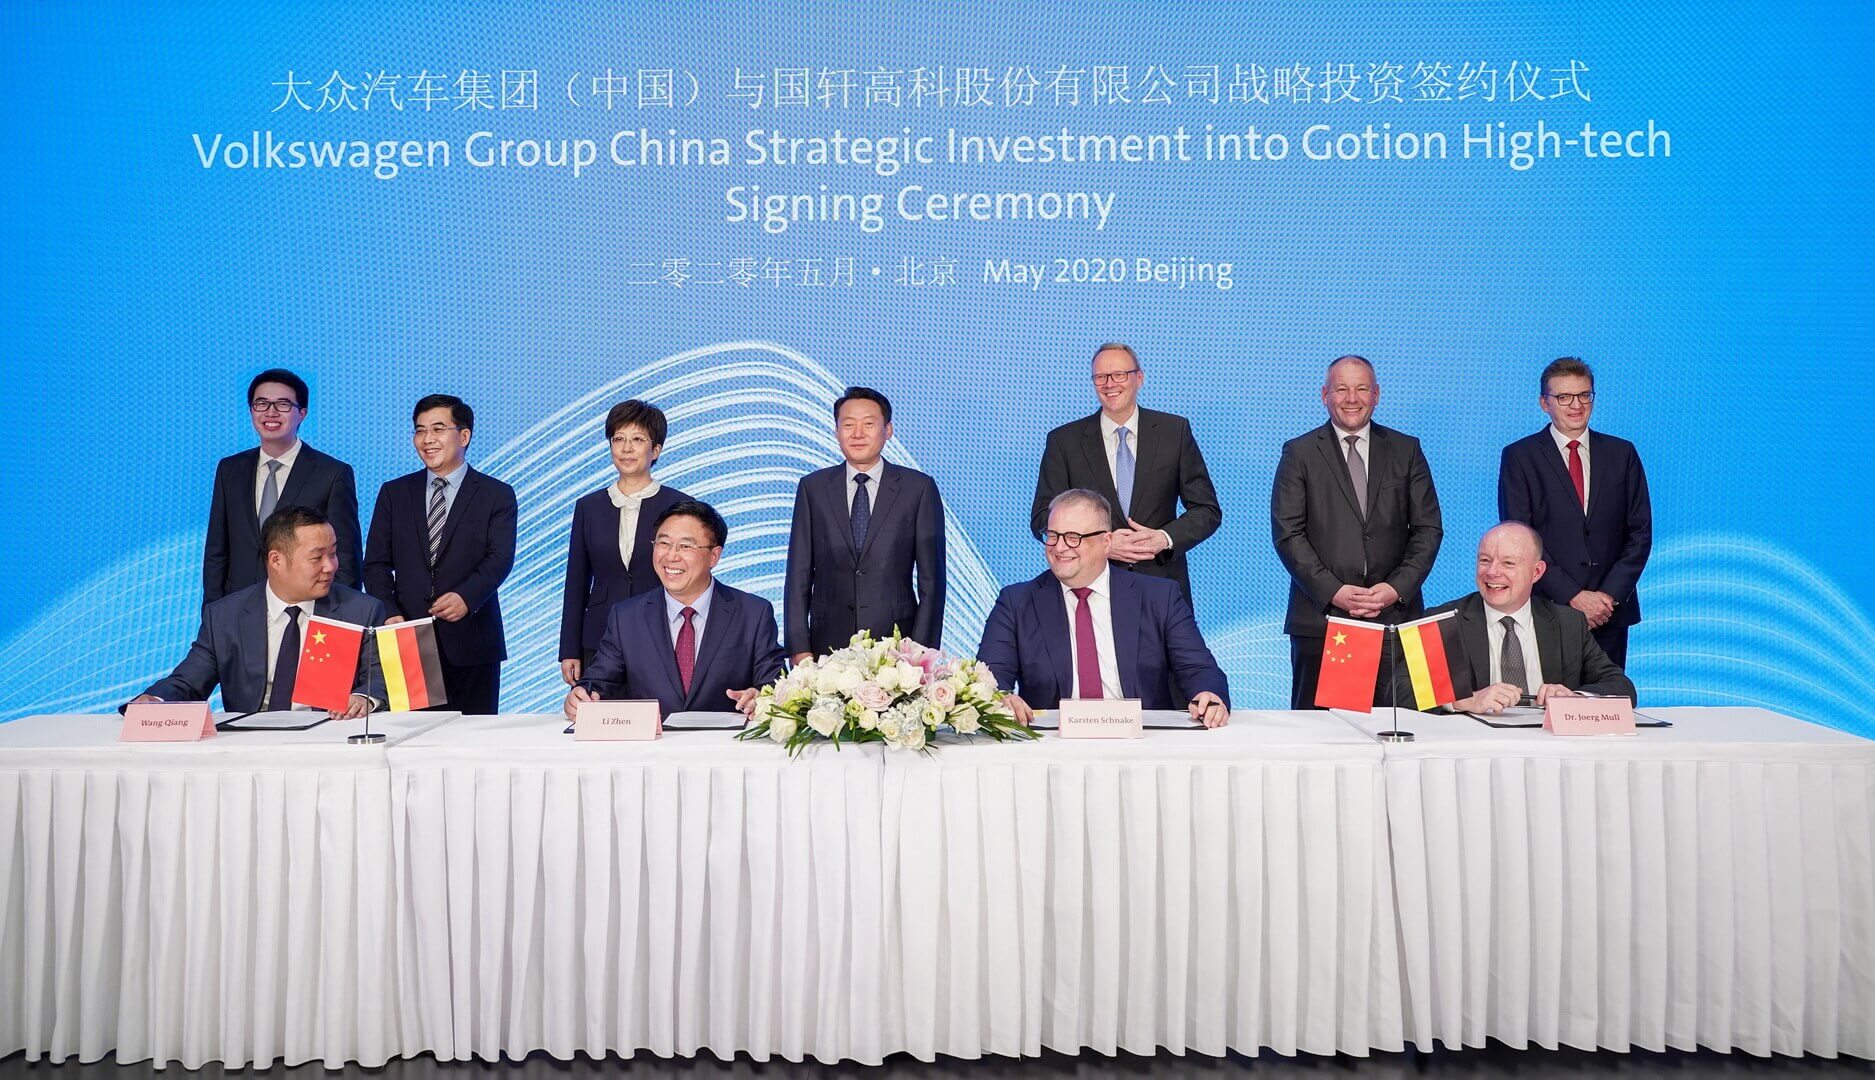 Церемония подписания стратегического инвестирования Volkswagen (China) в Gotion High-tech